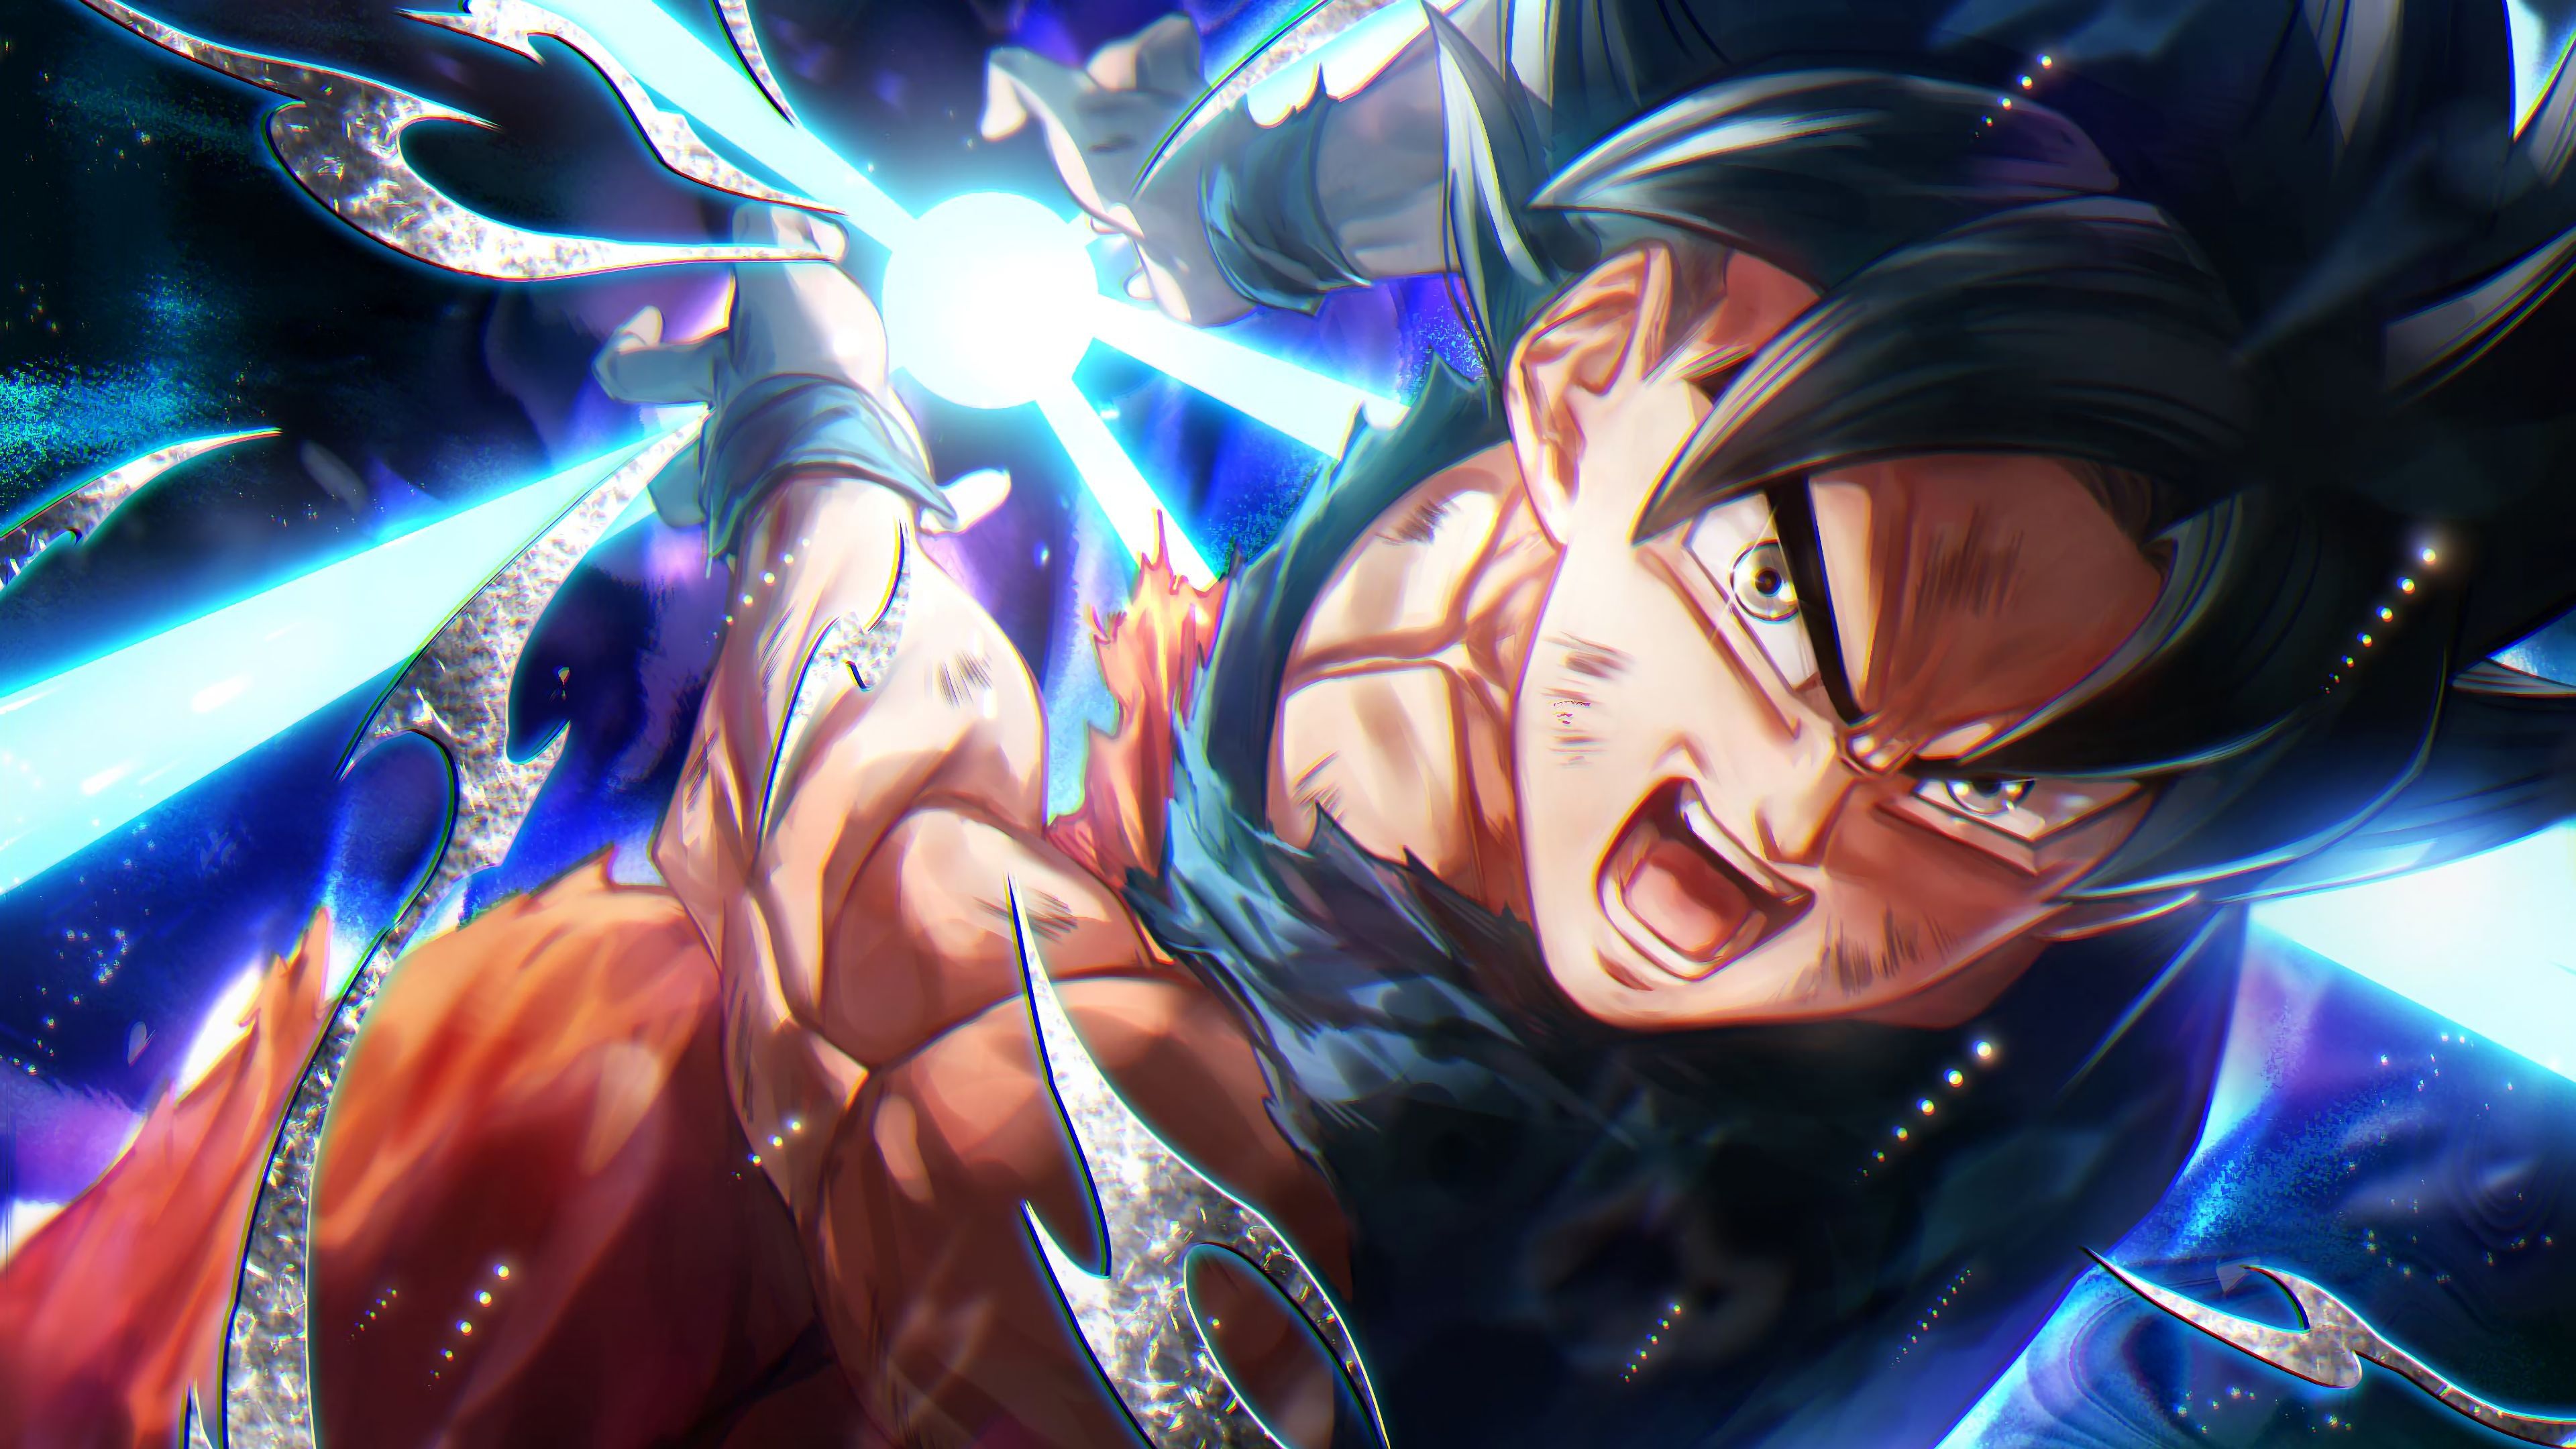 Hãy khám phá các hình nền Goku Ultra Instinct đẹp mắt để tăng cường động lực cho ngày mới! Ảnh nền này sẽ mang đến cho bạn sự tự tin, sức mạnh và sự bất khả chiến bại để đổi một ngày thành một thành công.